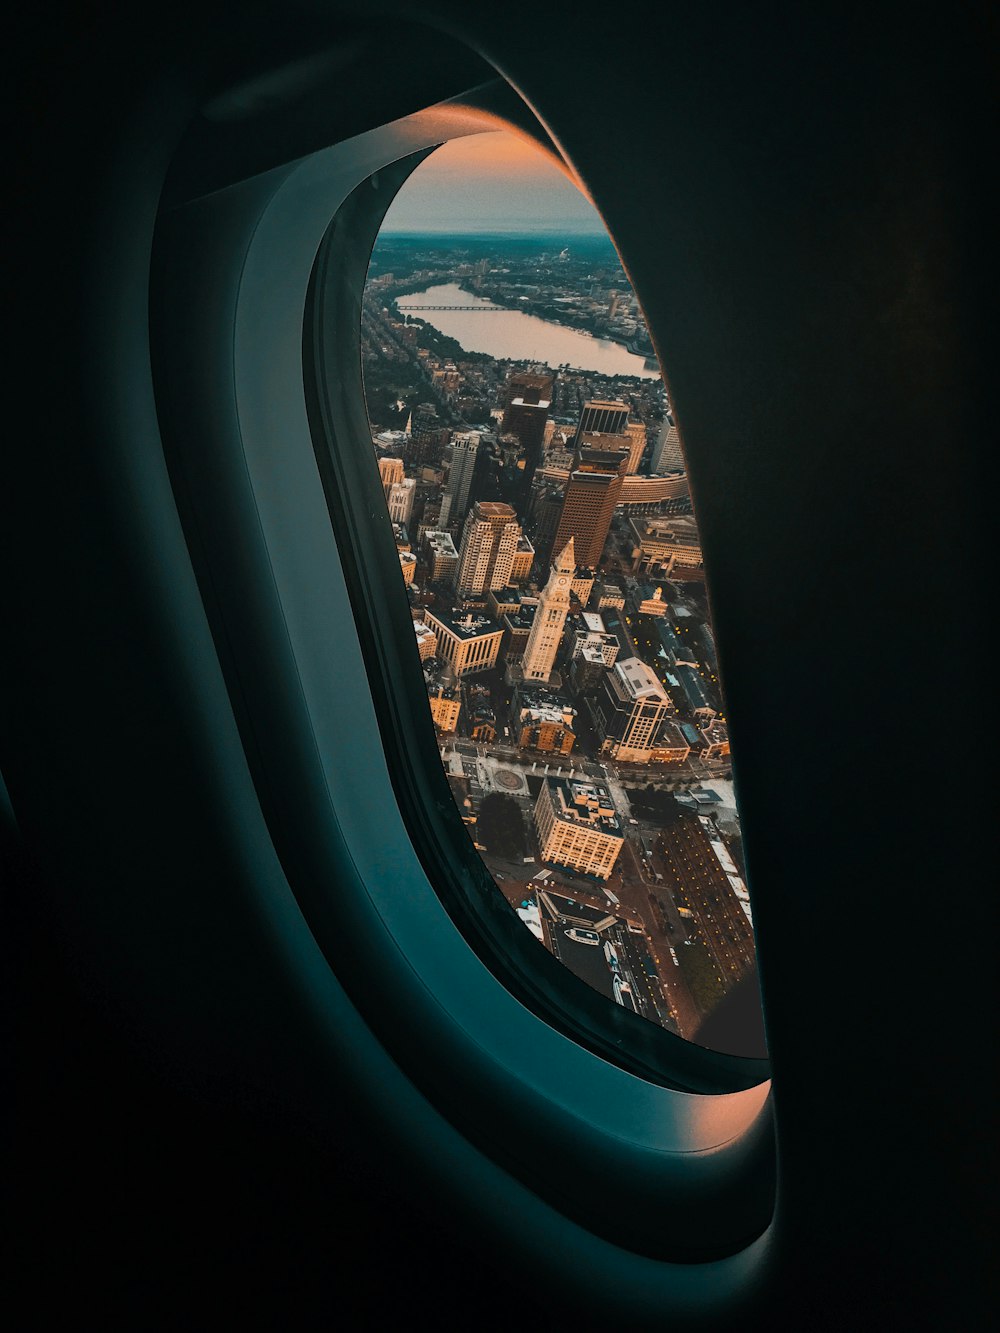 Vista degli edifici della città dal finestrino dell'aereo